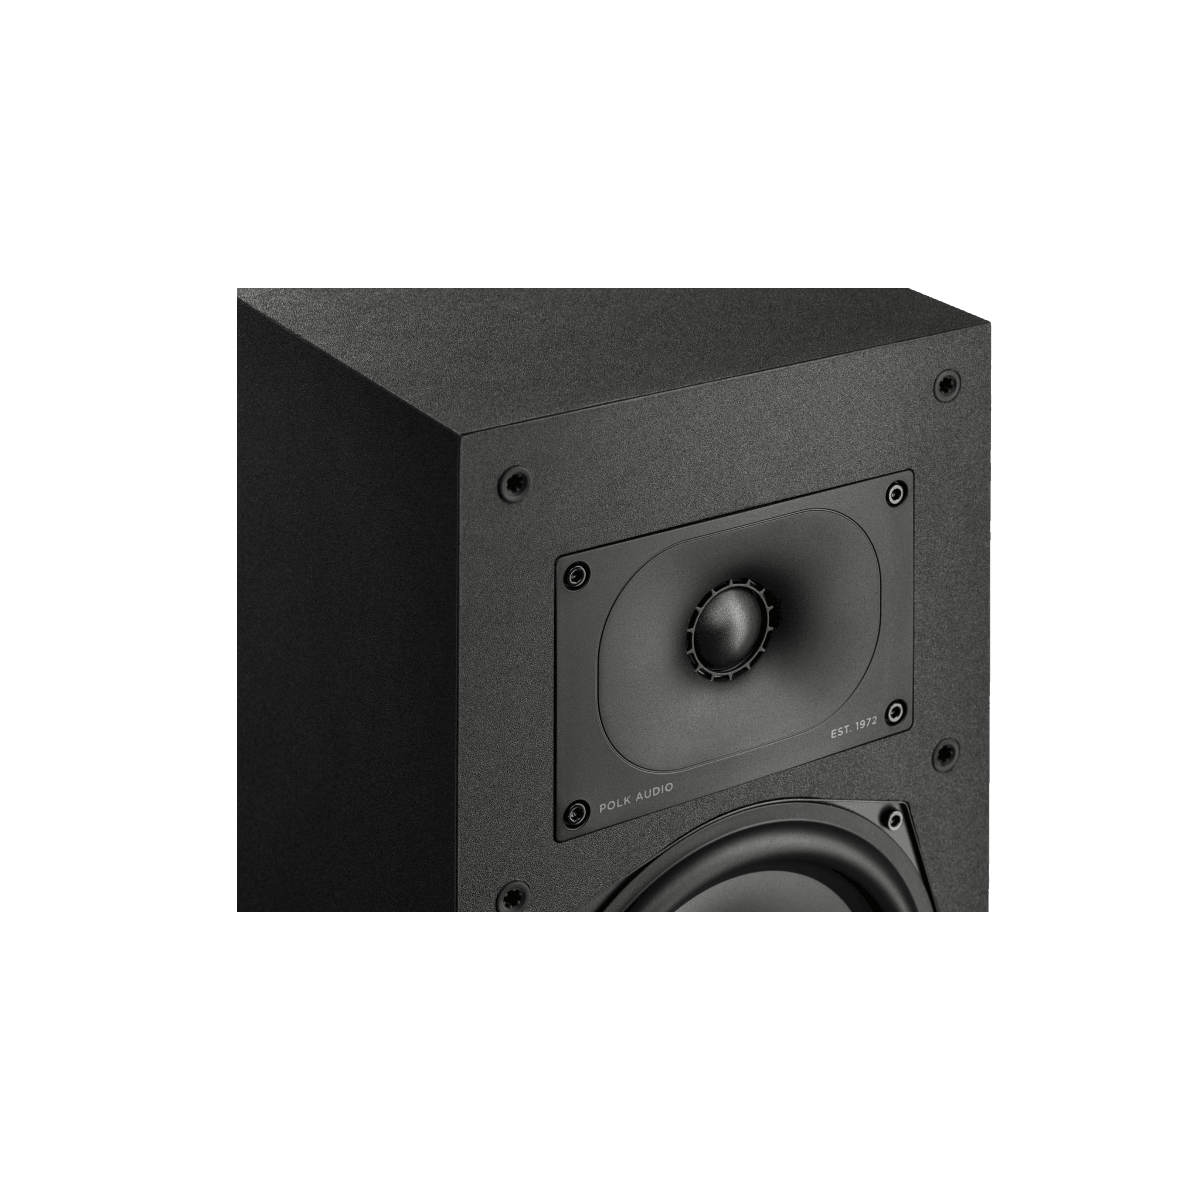 Polk Audio Monitor XT20 Bookshelf Speaker (Pair)